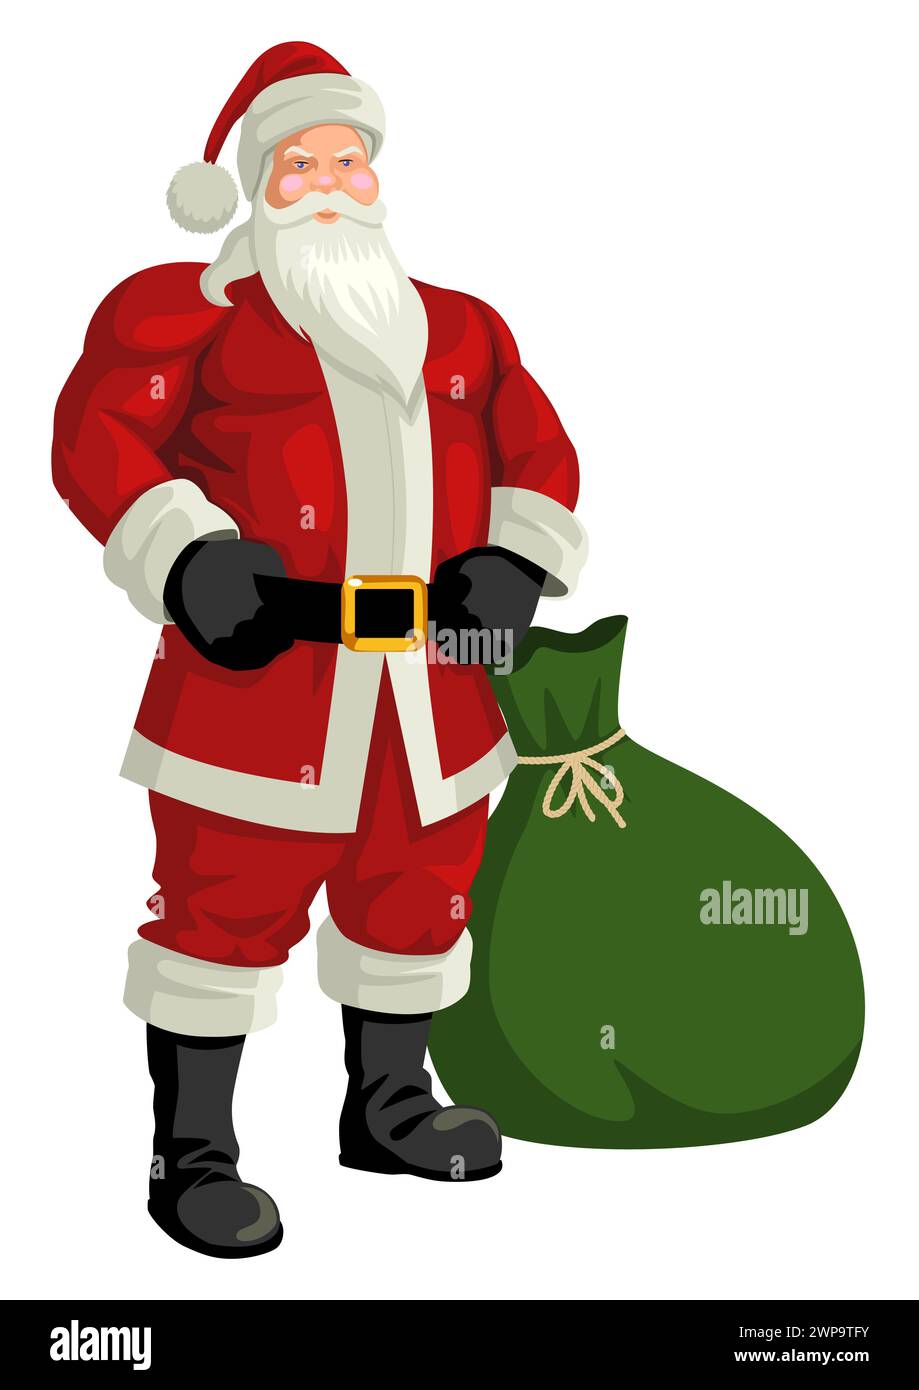 Dessin animé d'un Père Noël musclé dans une pose galante, représentation énergique ajoute une touche ludique et moderne à l'image traditionnelle du Père Noël. Injection de bourdonnement Illustration de Vecteur